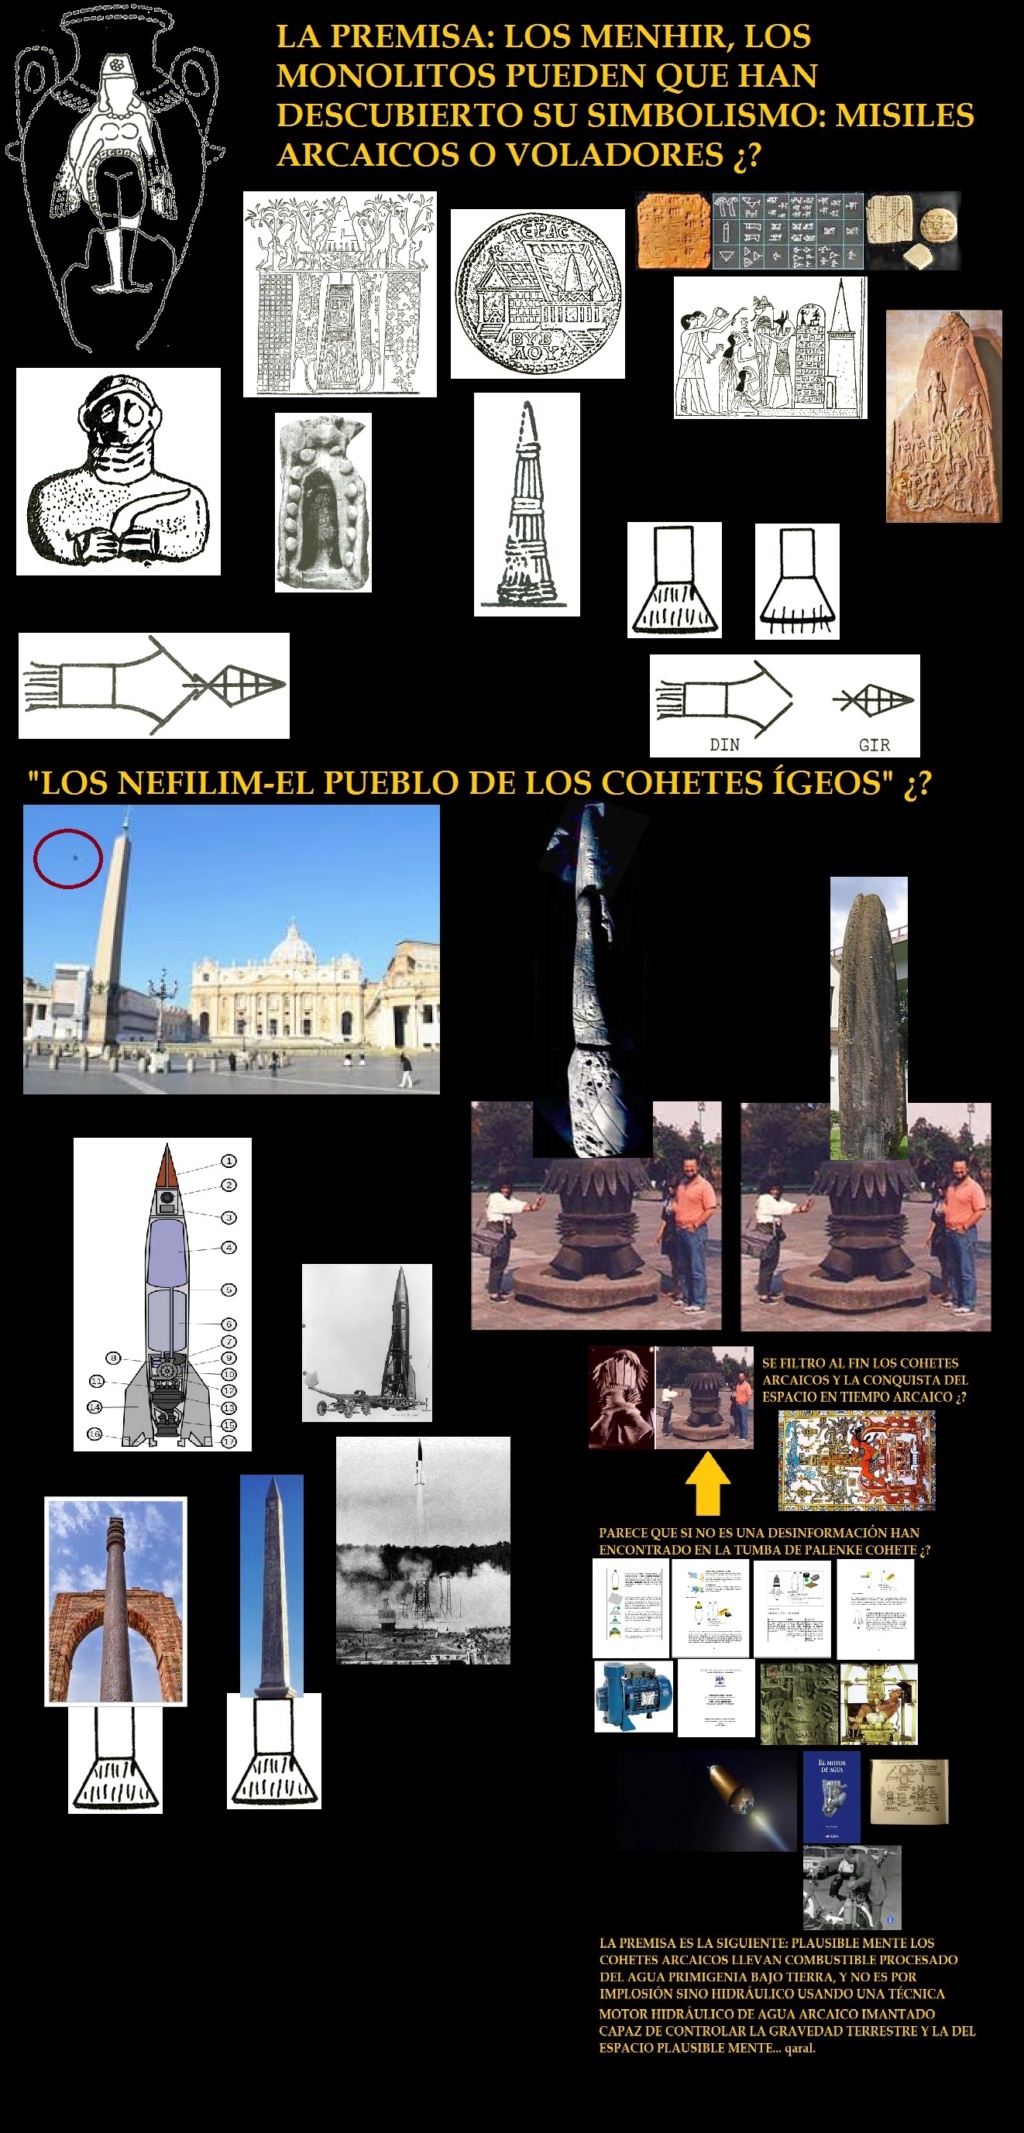 ¿LOS MENHIR, MONOLITOS, FUERON MONUMENTOS DEDICADOS A LOS MISILES ARCAICOS? Fig05810